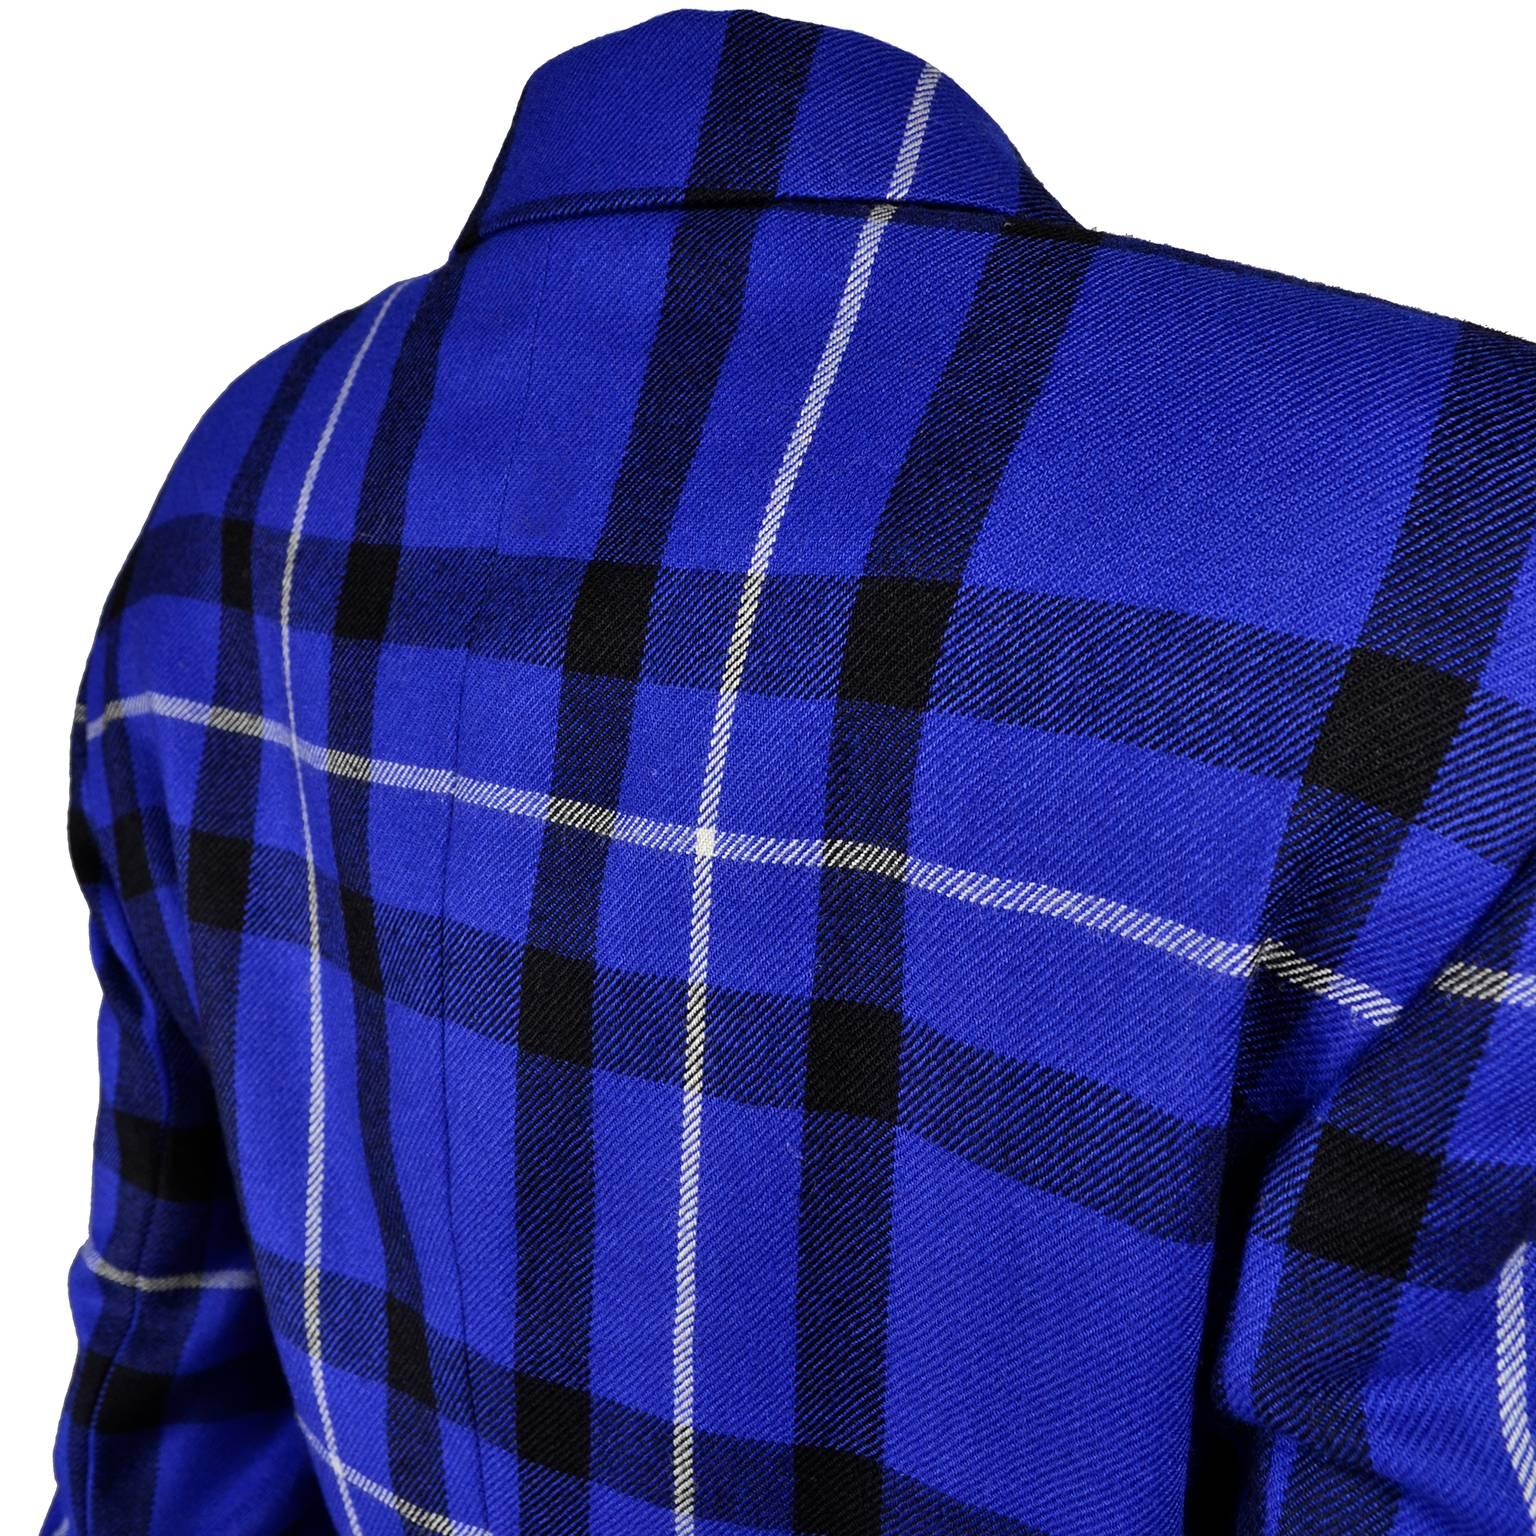 Escada Pantsuit in Blue Plaid Wool w/ Trousers & Blazer Jacket by Margaretha Ley 3